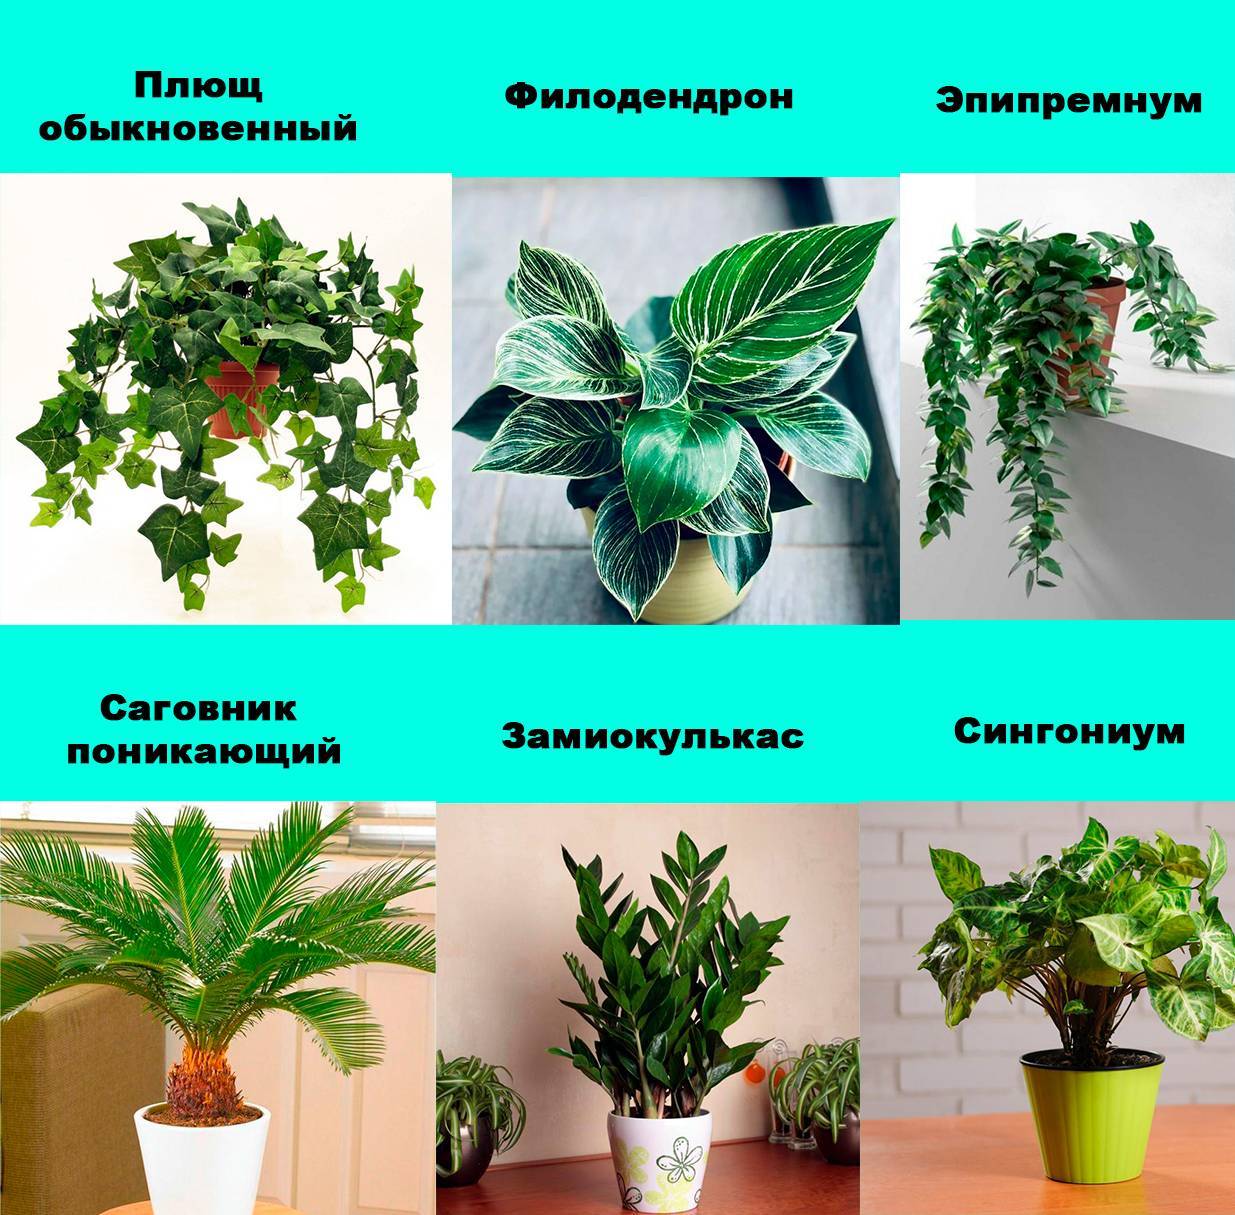 Ядовитые комнатные растения